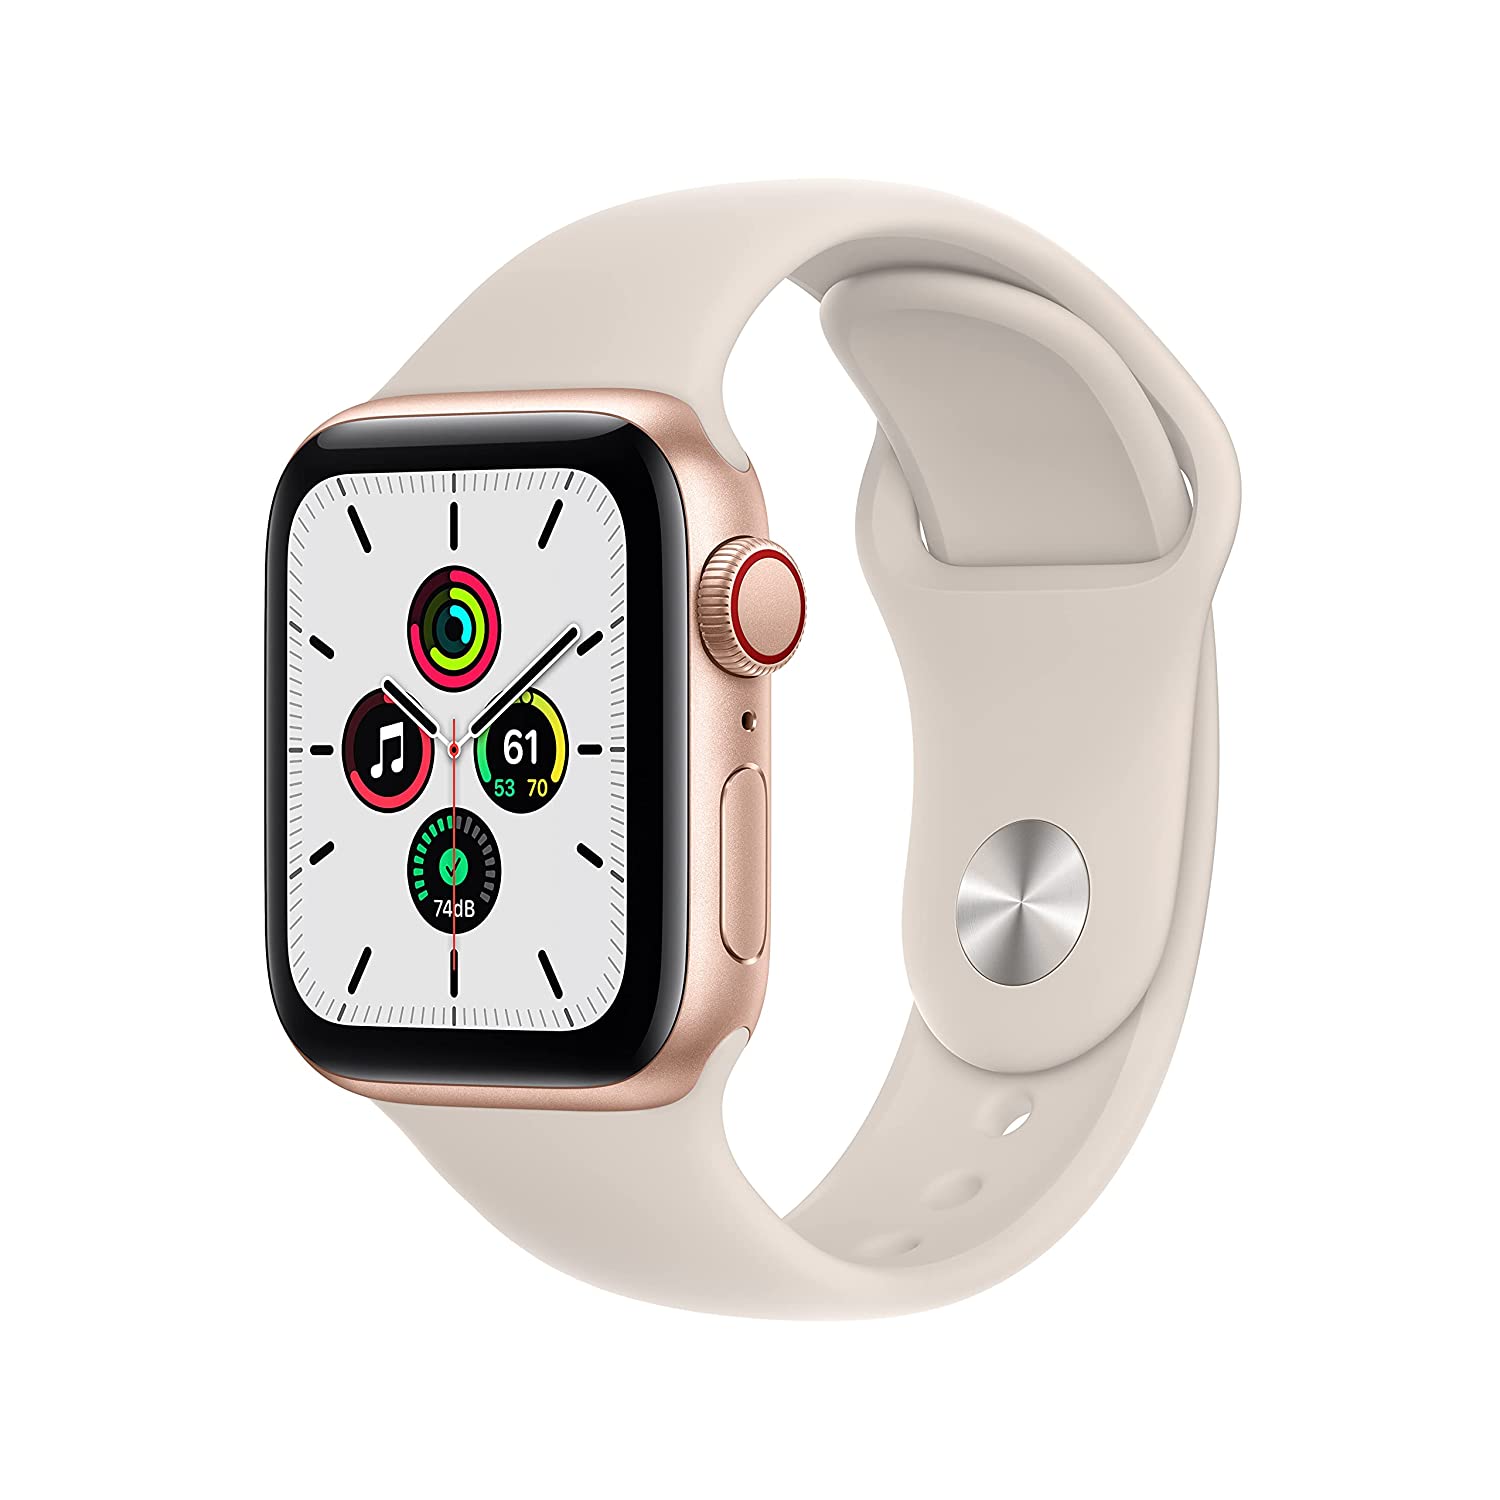 apple watch se offers